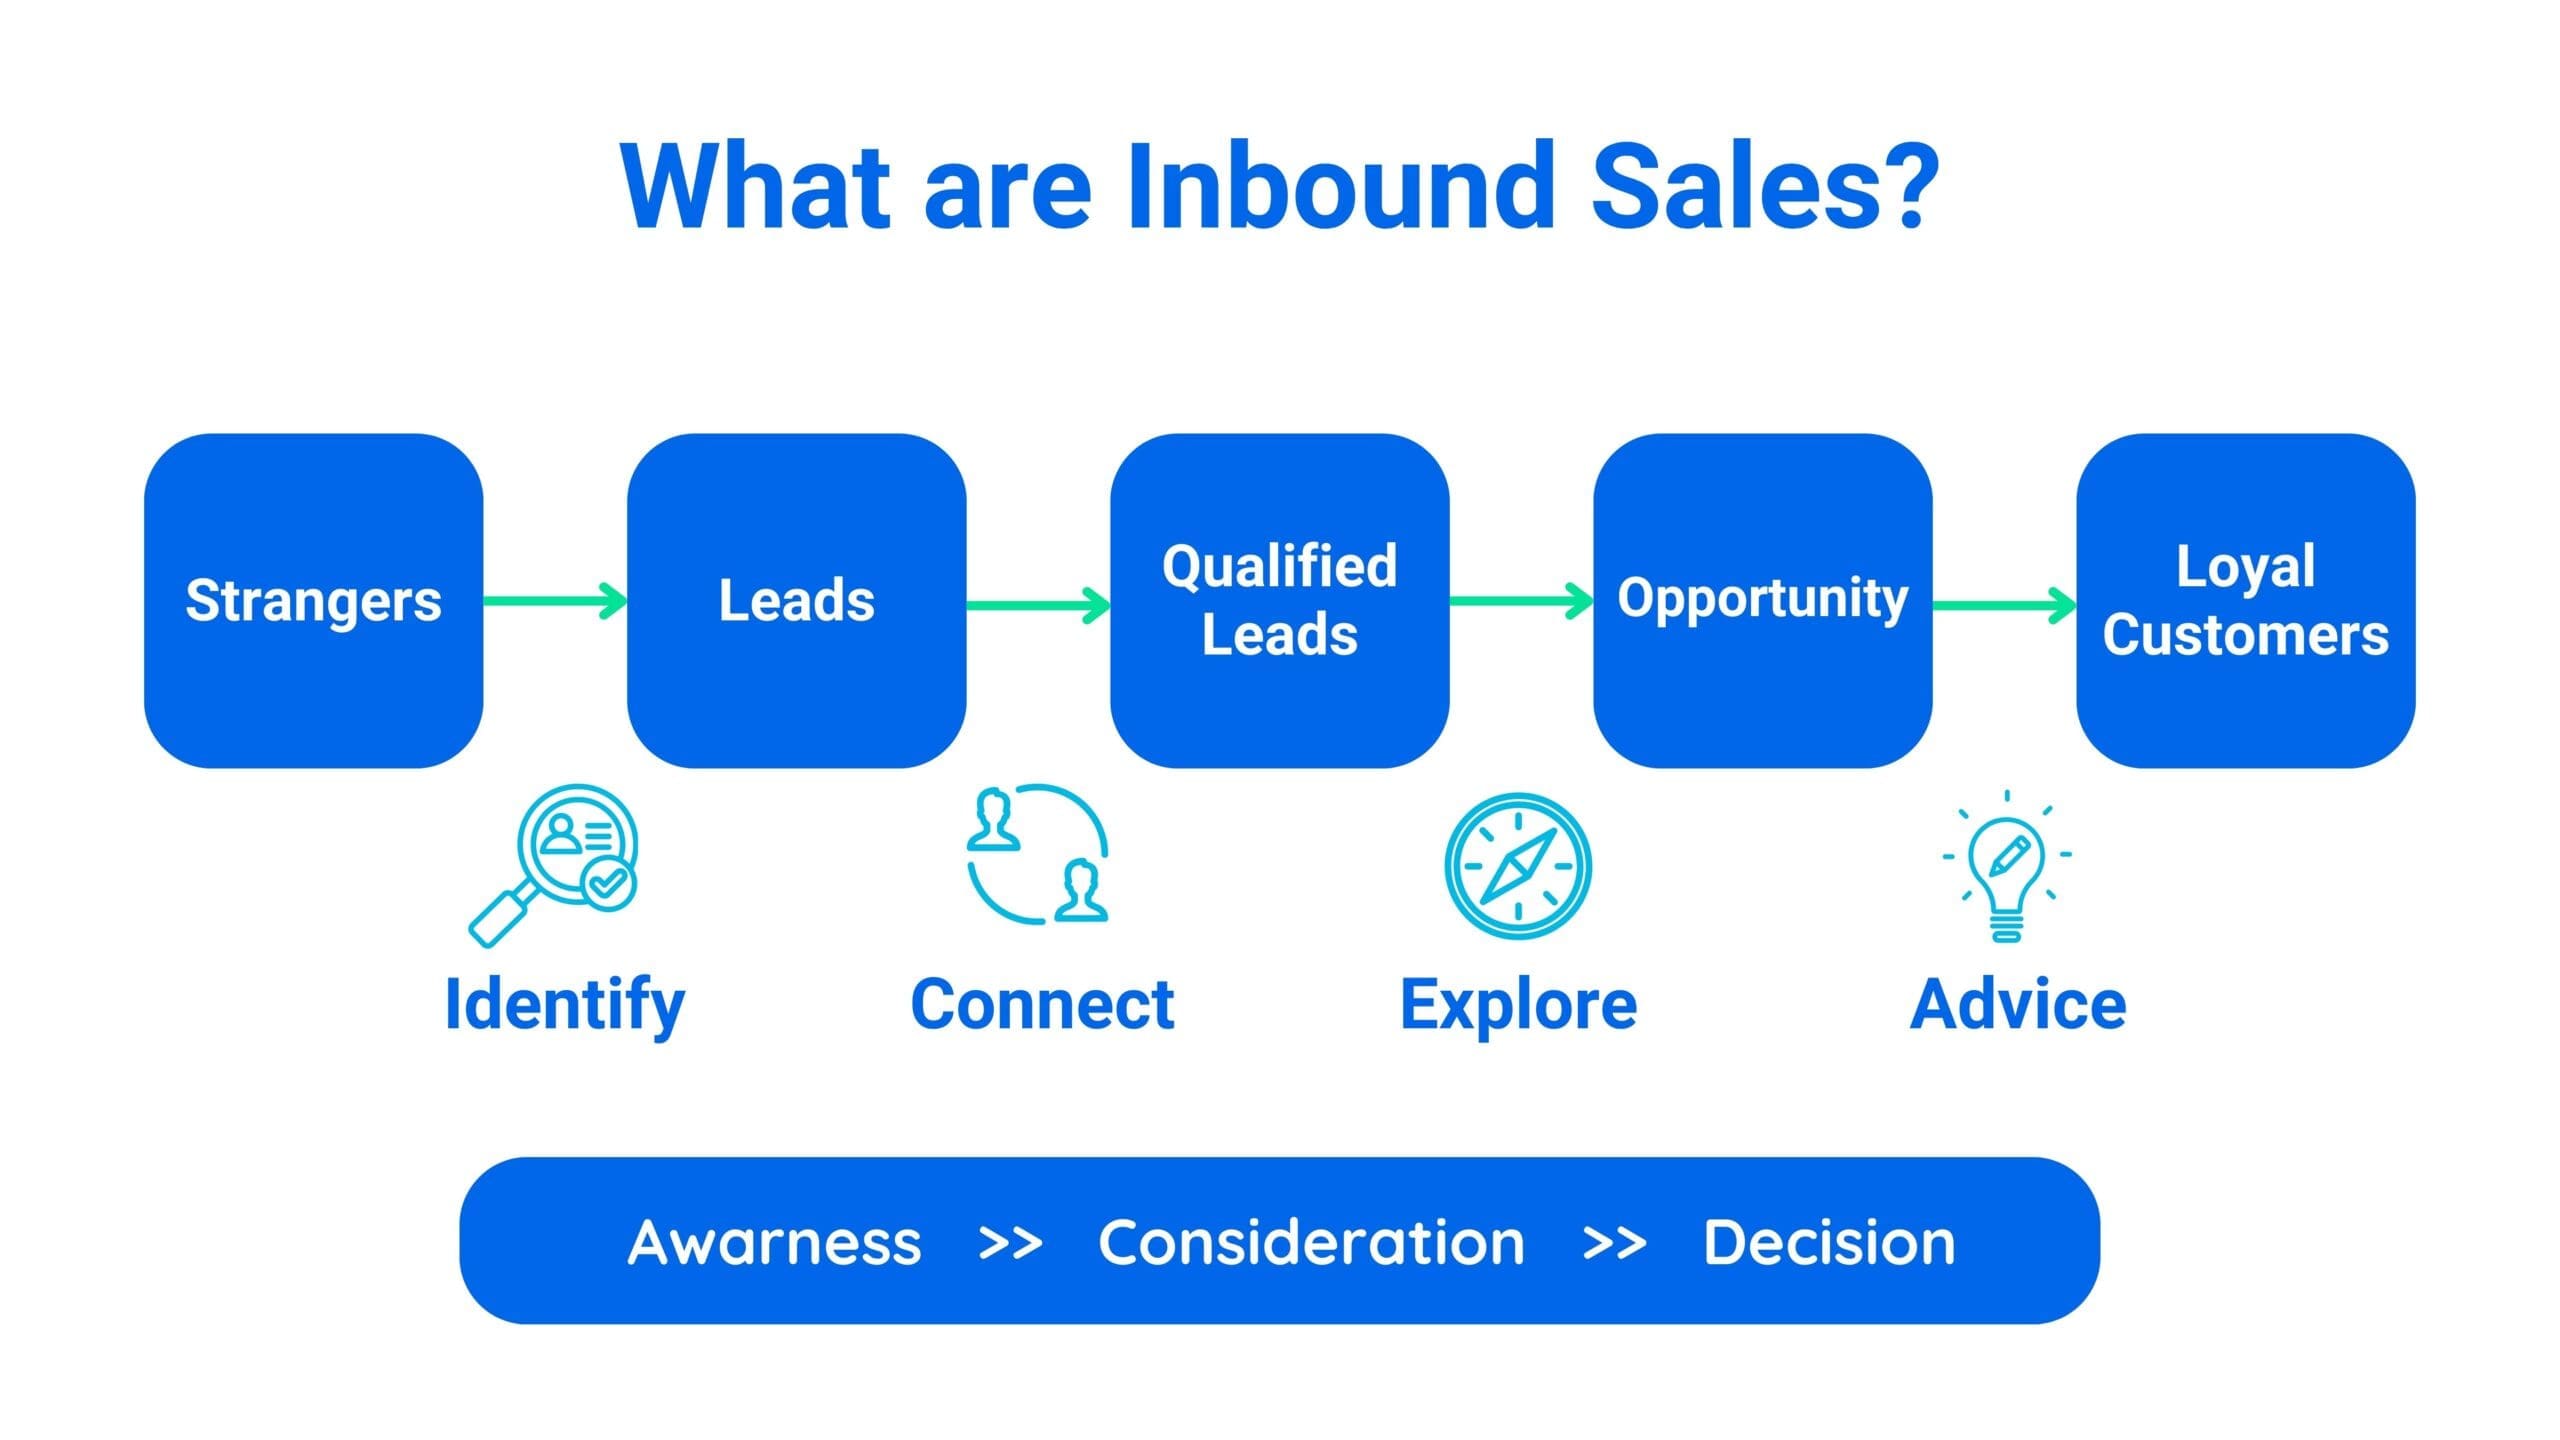 What are inbound Sales?